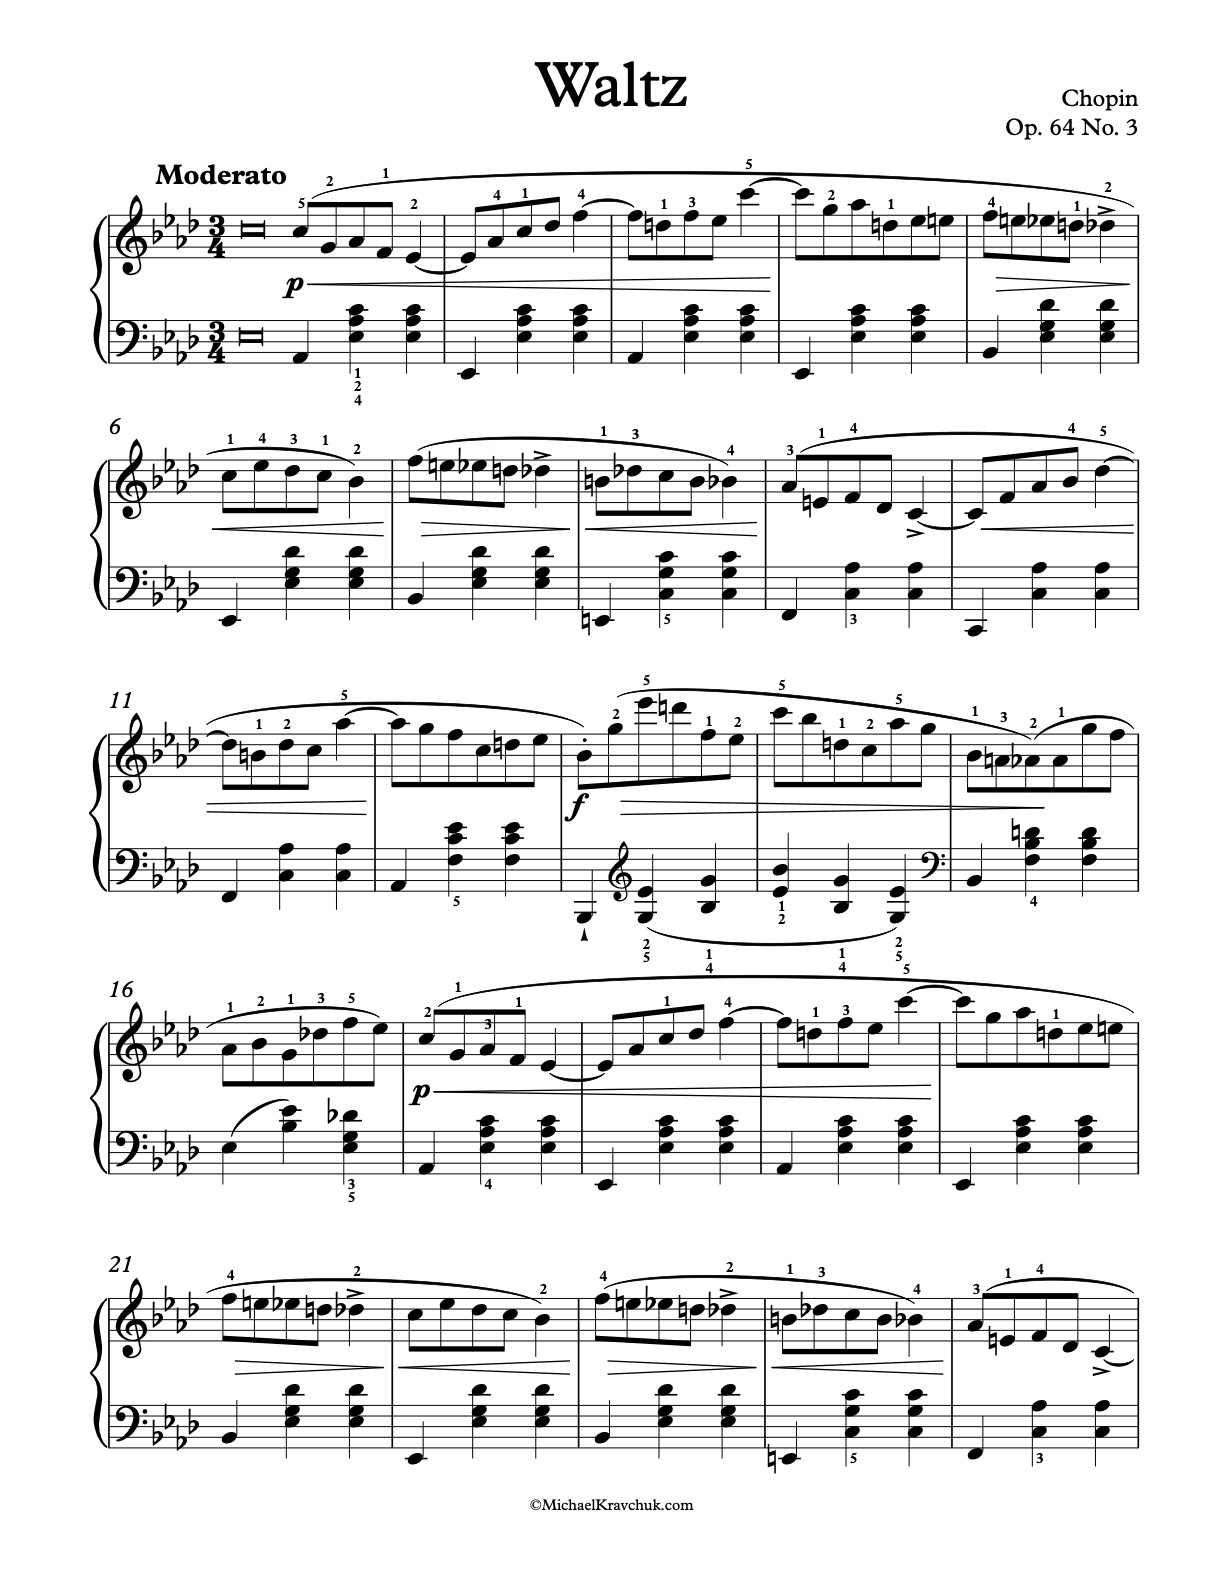 Waltz Op. 64, No. 3 Piano Sheet Music